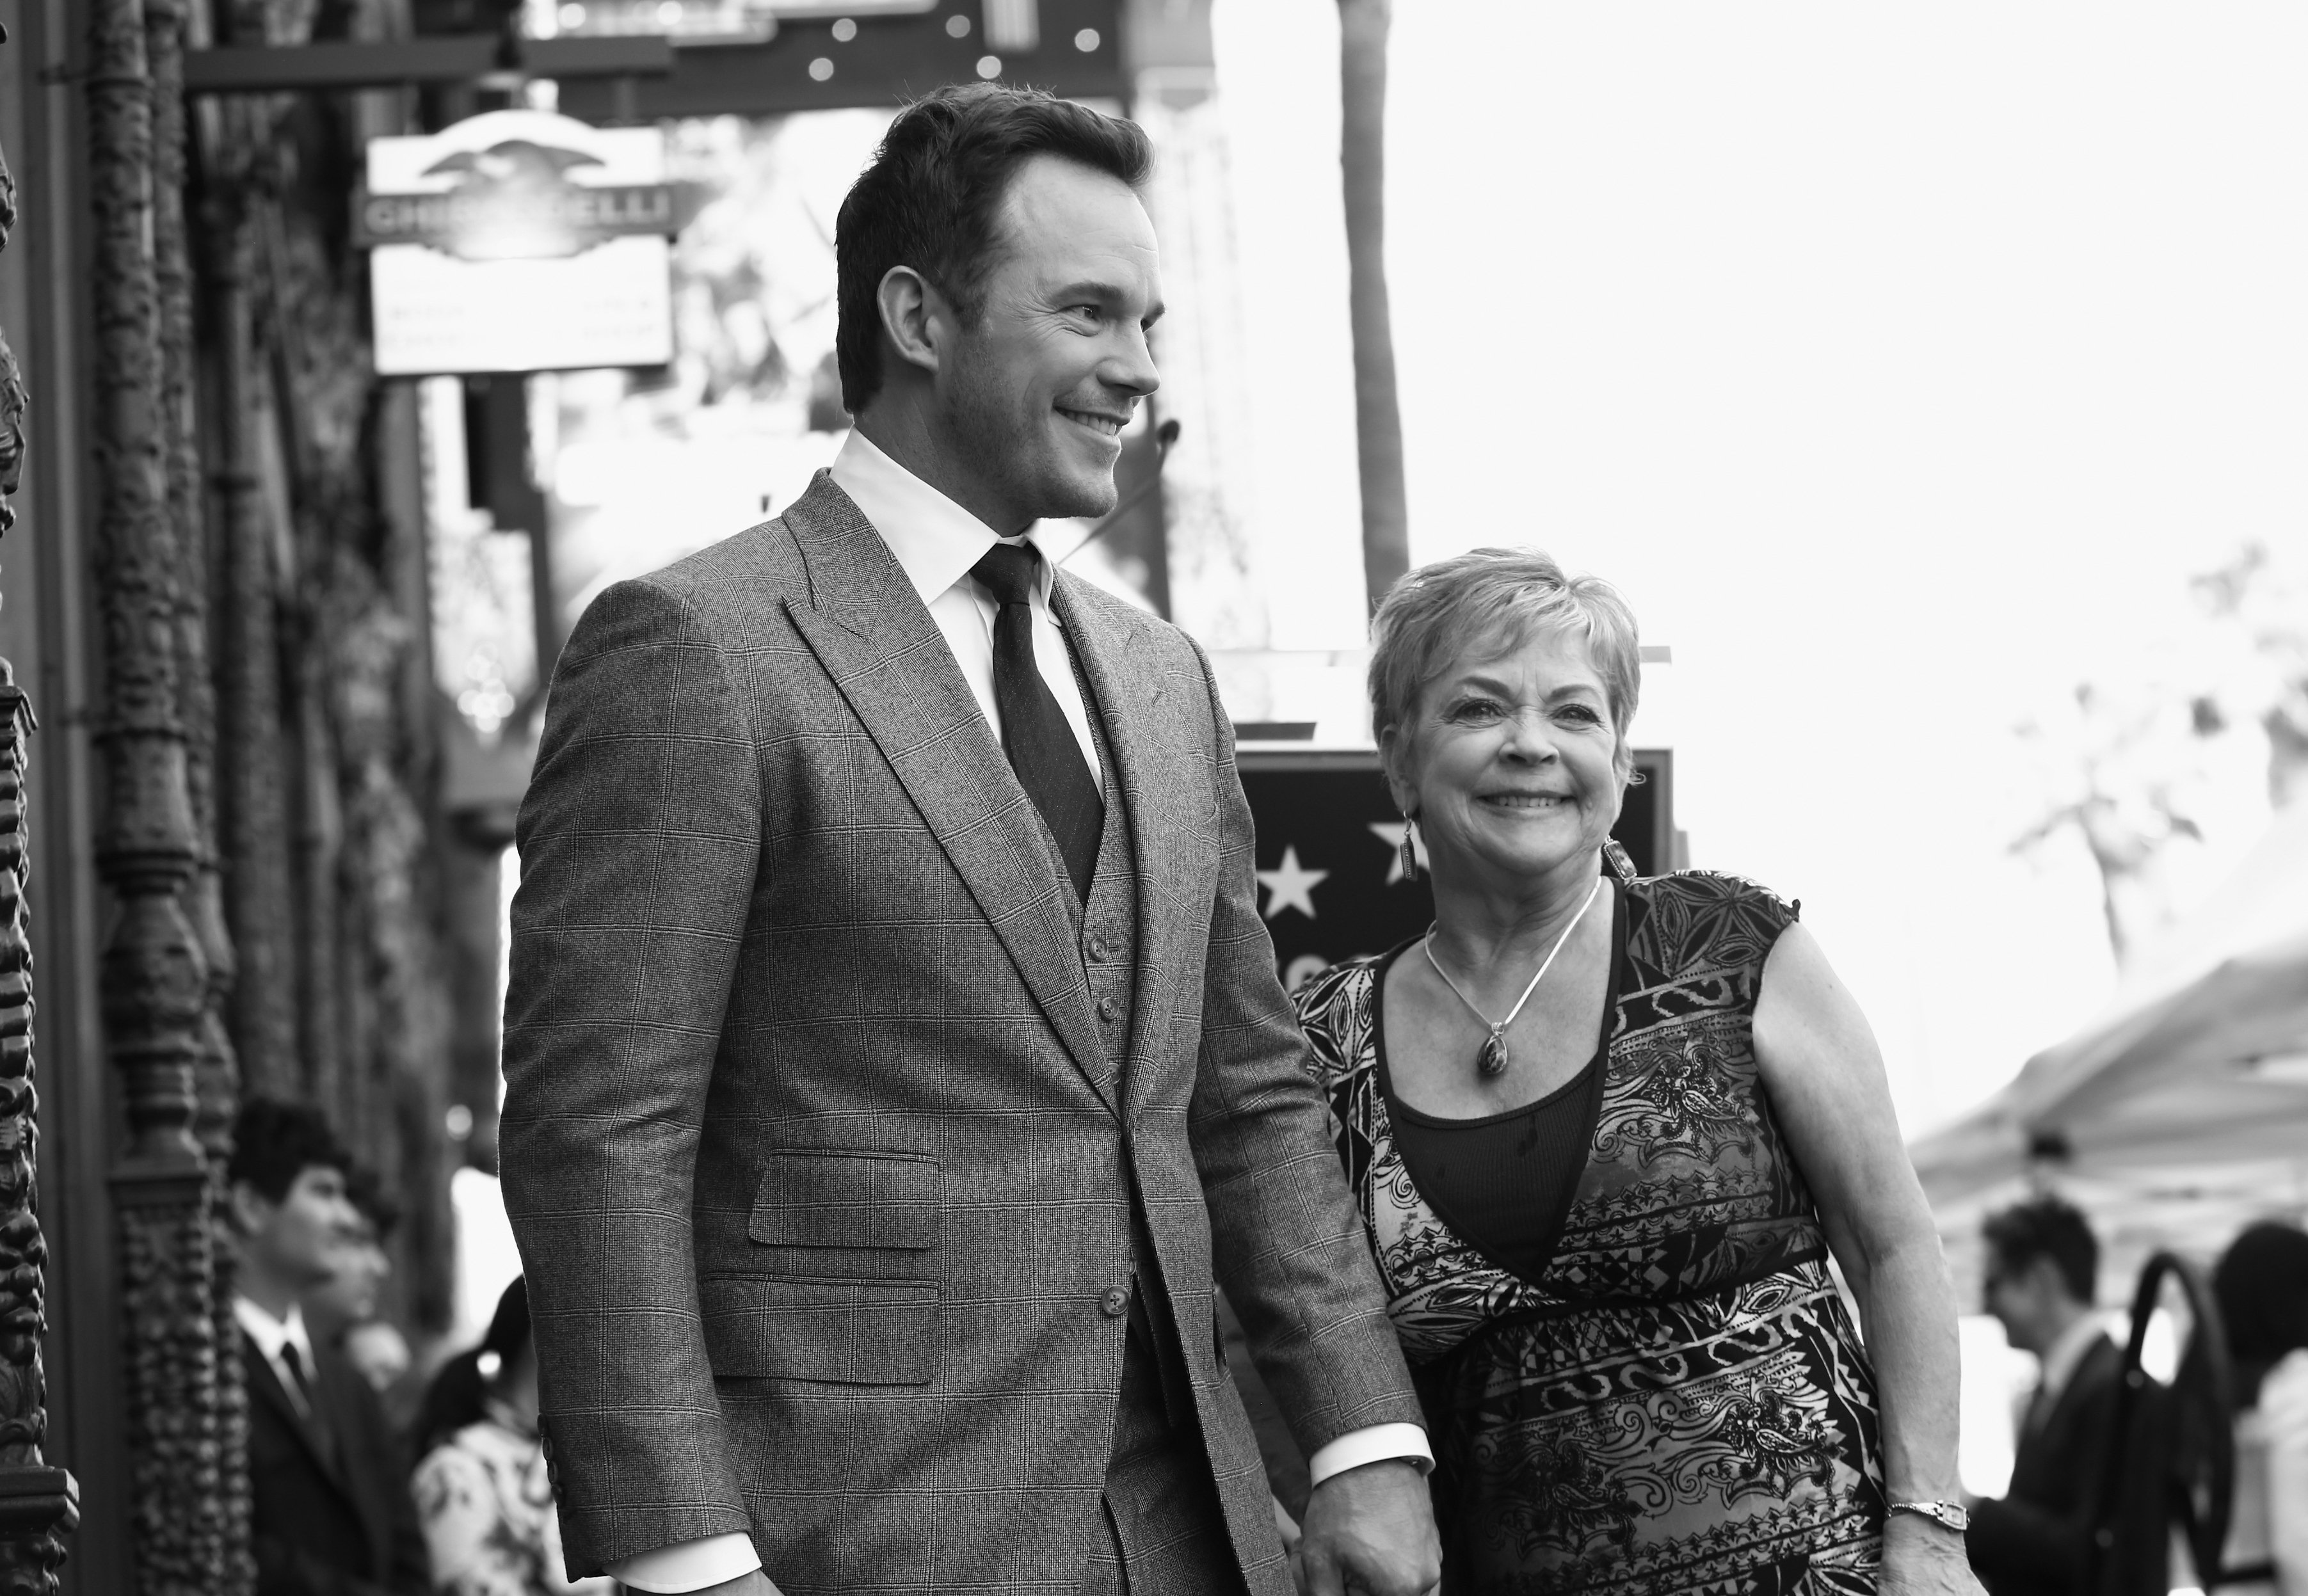 Chris Pratt et sa mère, Kathy Pratt, lors de la cérémonie de remise de l'étoile Chris Pratt Walk of Fame, le 21 avril 2017 à Hollywood, Californie | Source : Getty Images